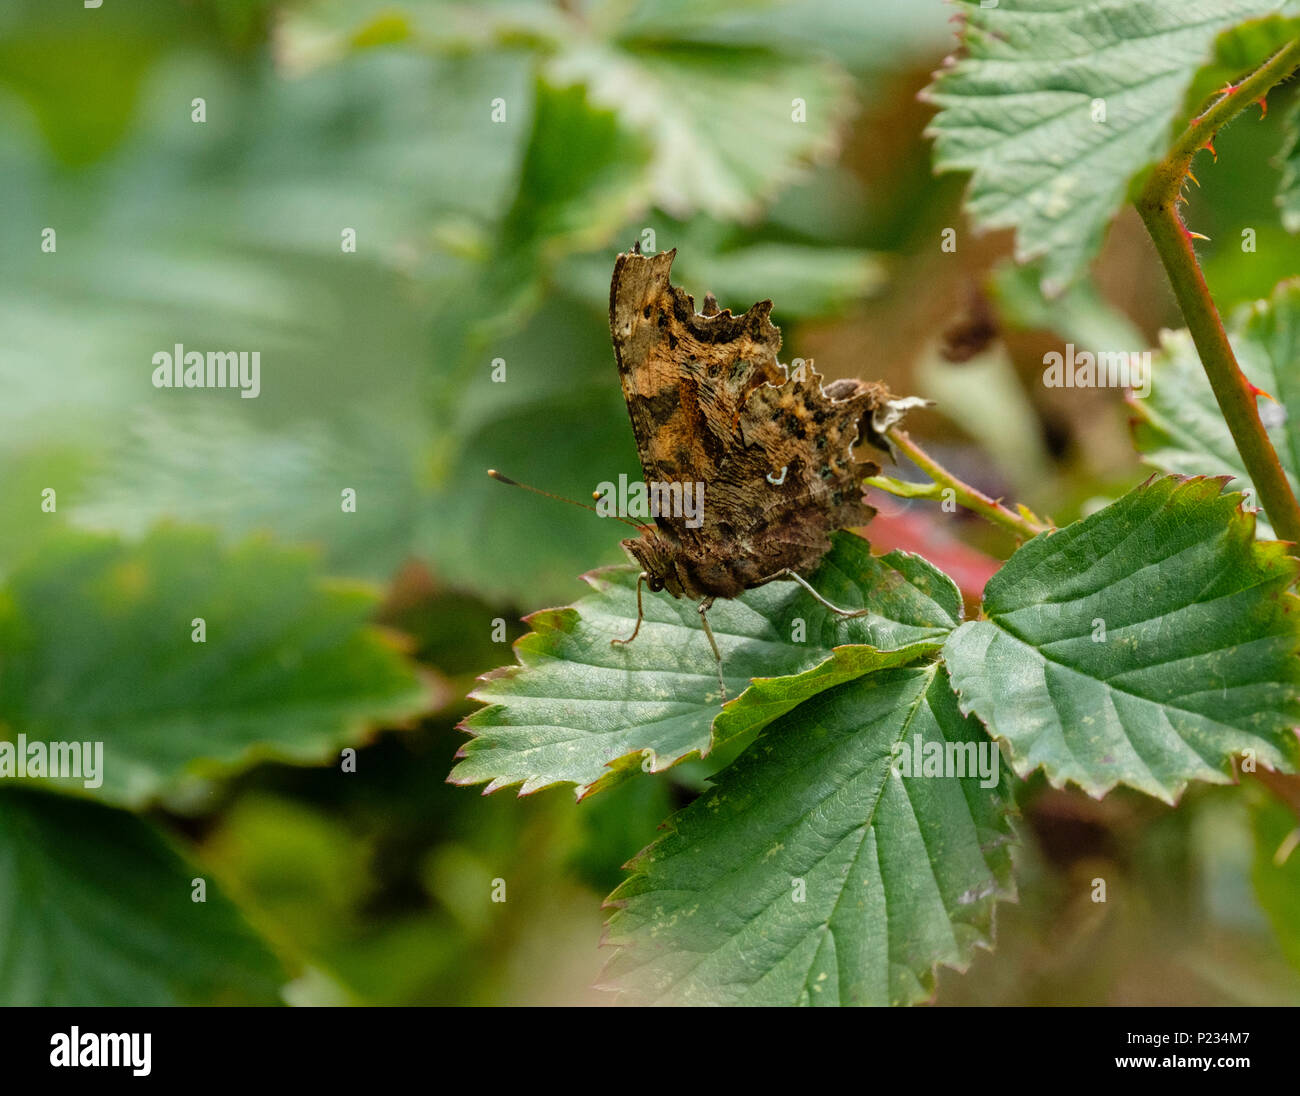 Ein Komma Schmetterling zeigt seine Unterseite mit dem charakteristischen weißen Markierung, aus denen die Arten, die seinen Namen erhält. Stockfoto